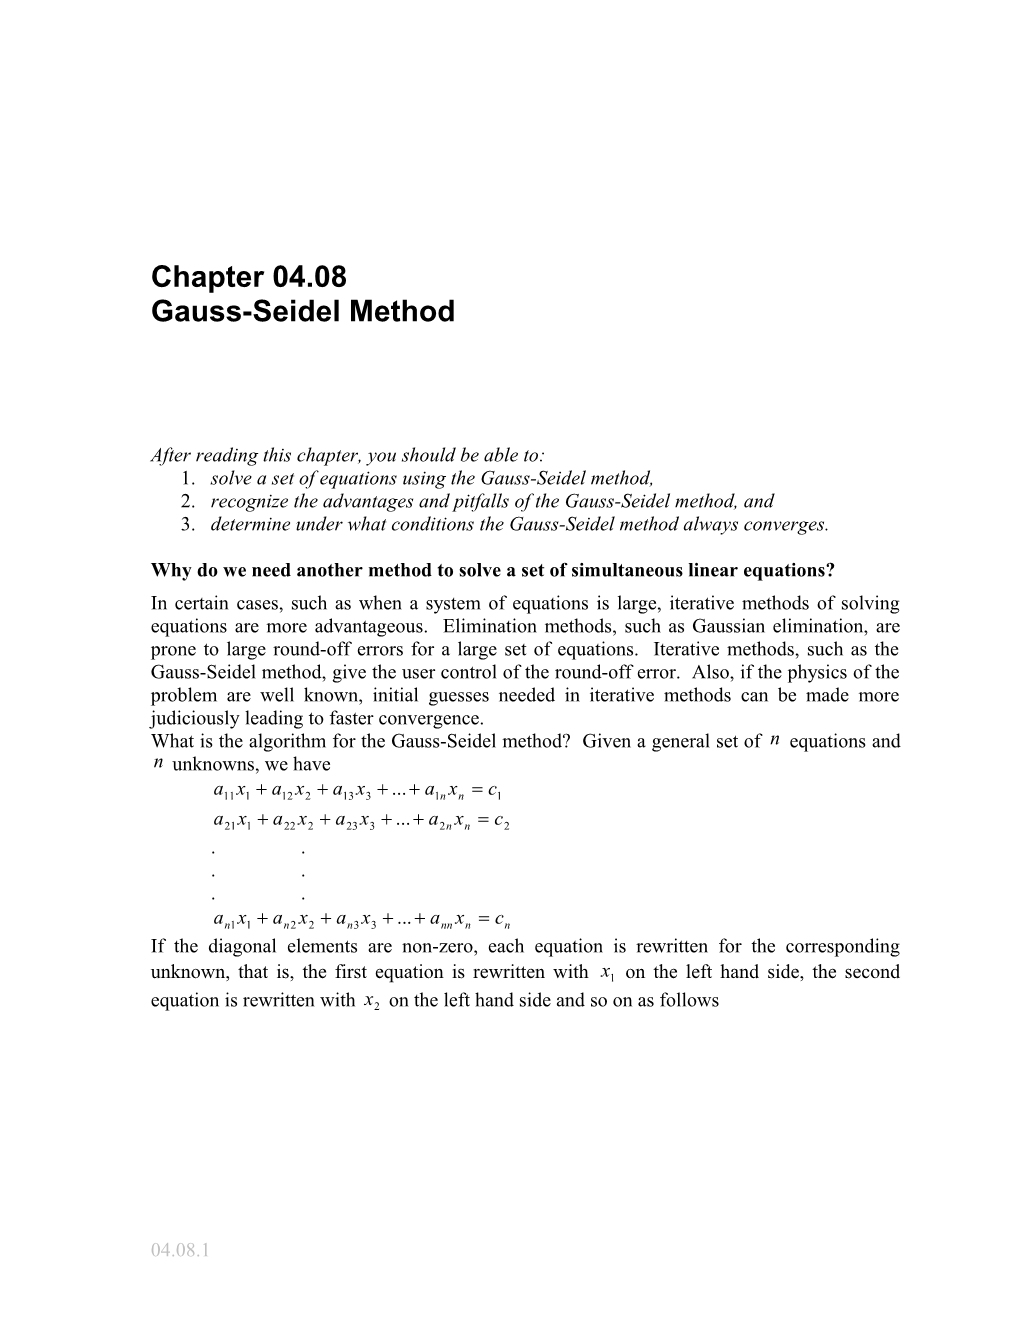 Gauss Seiddel Method: General Engineering